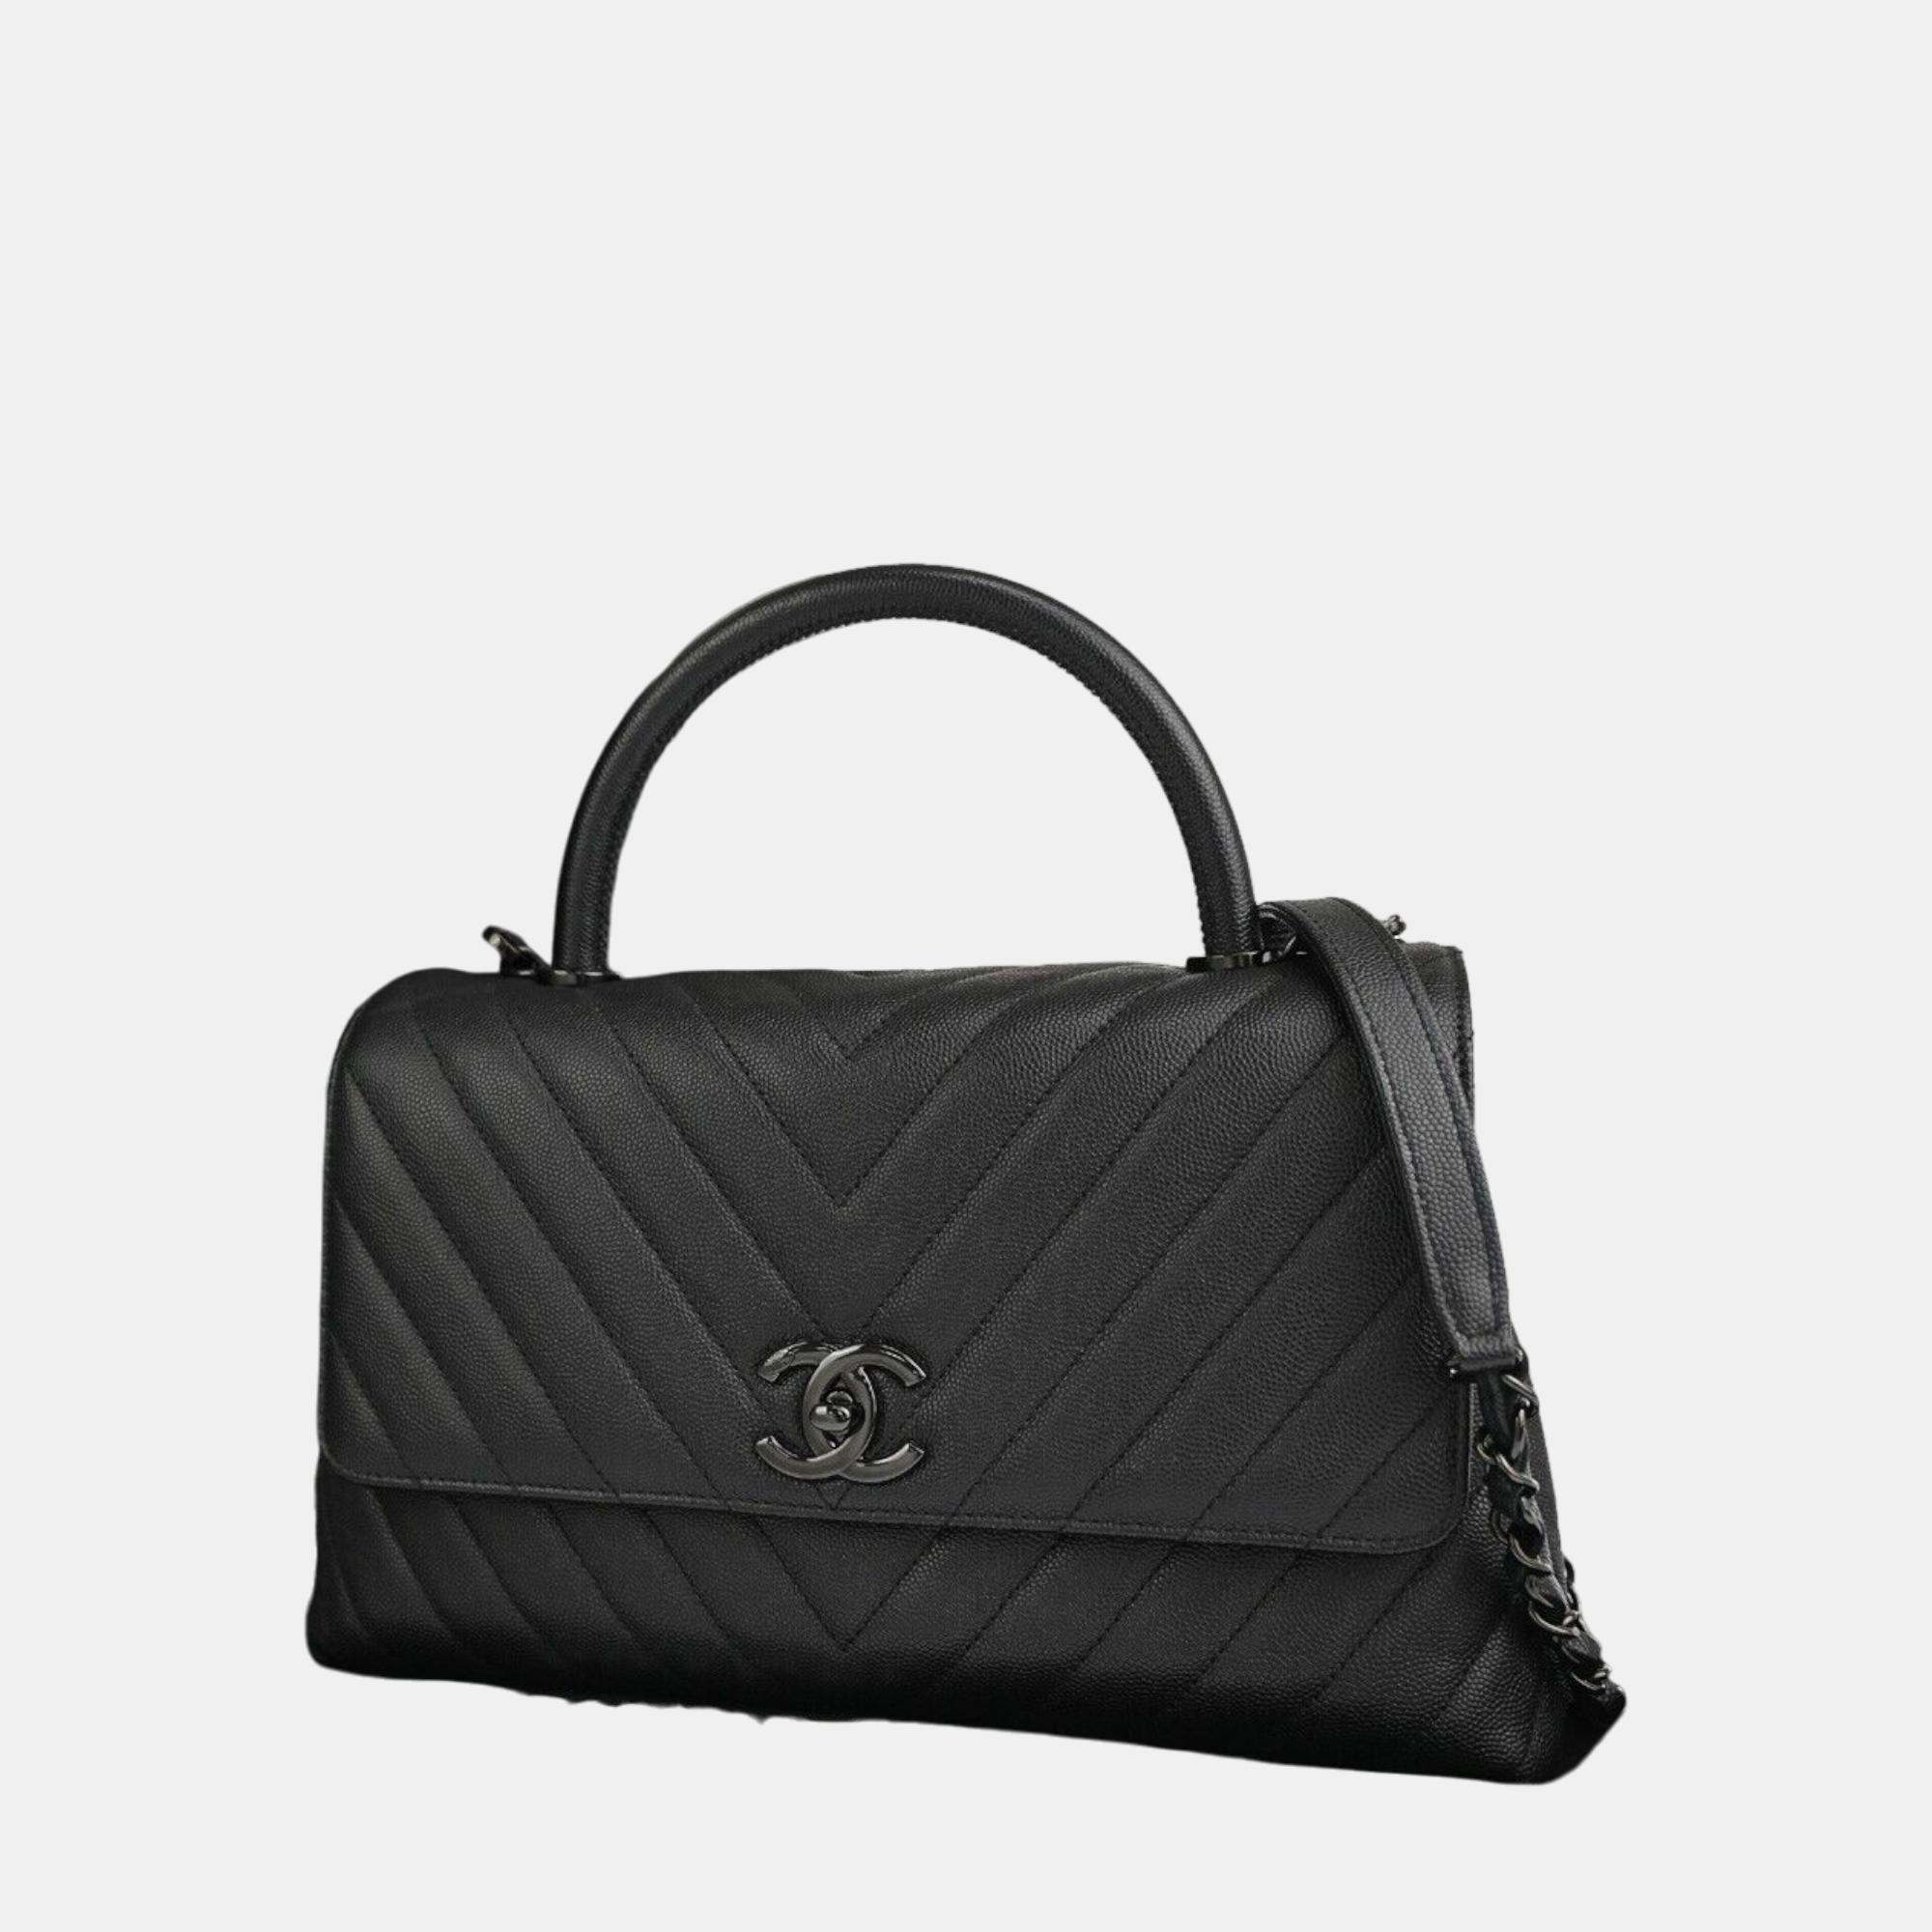 Chanel black leather medium coco handle top handle bag